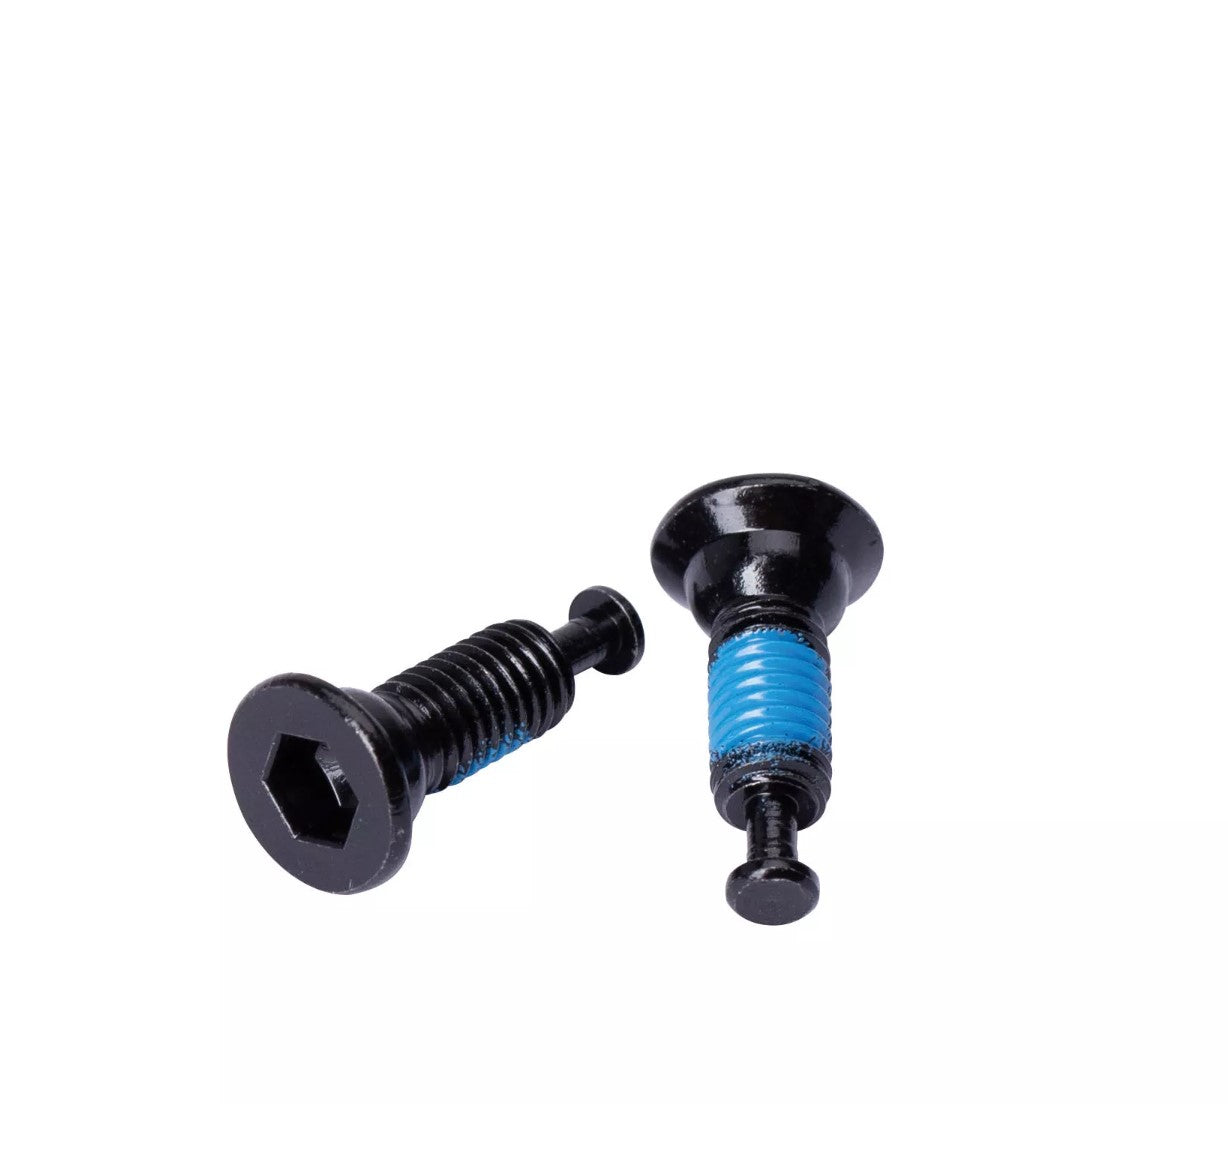 Contec Screwr brake caliper screws, set of 2 - different lengths